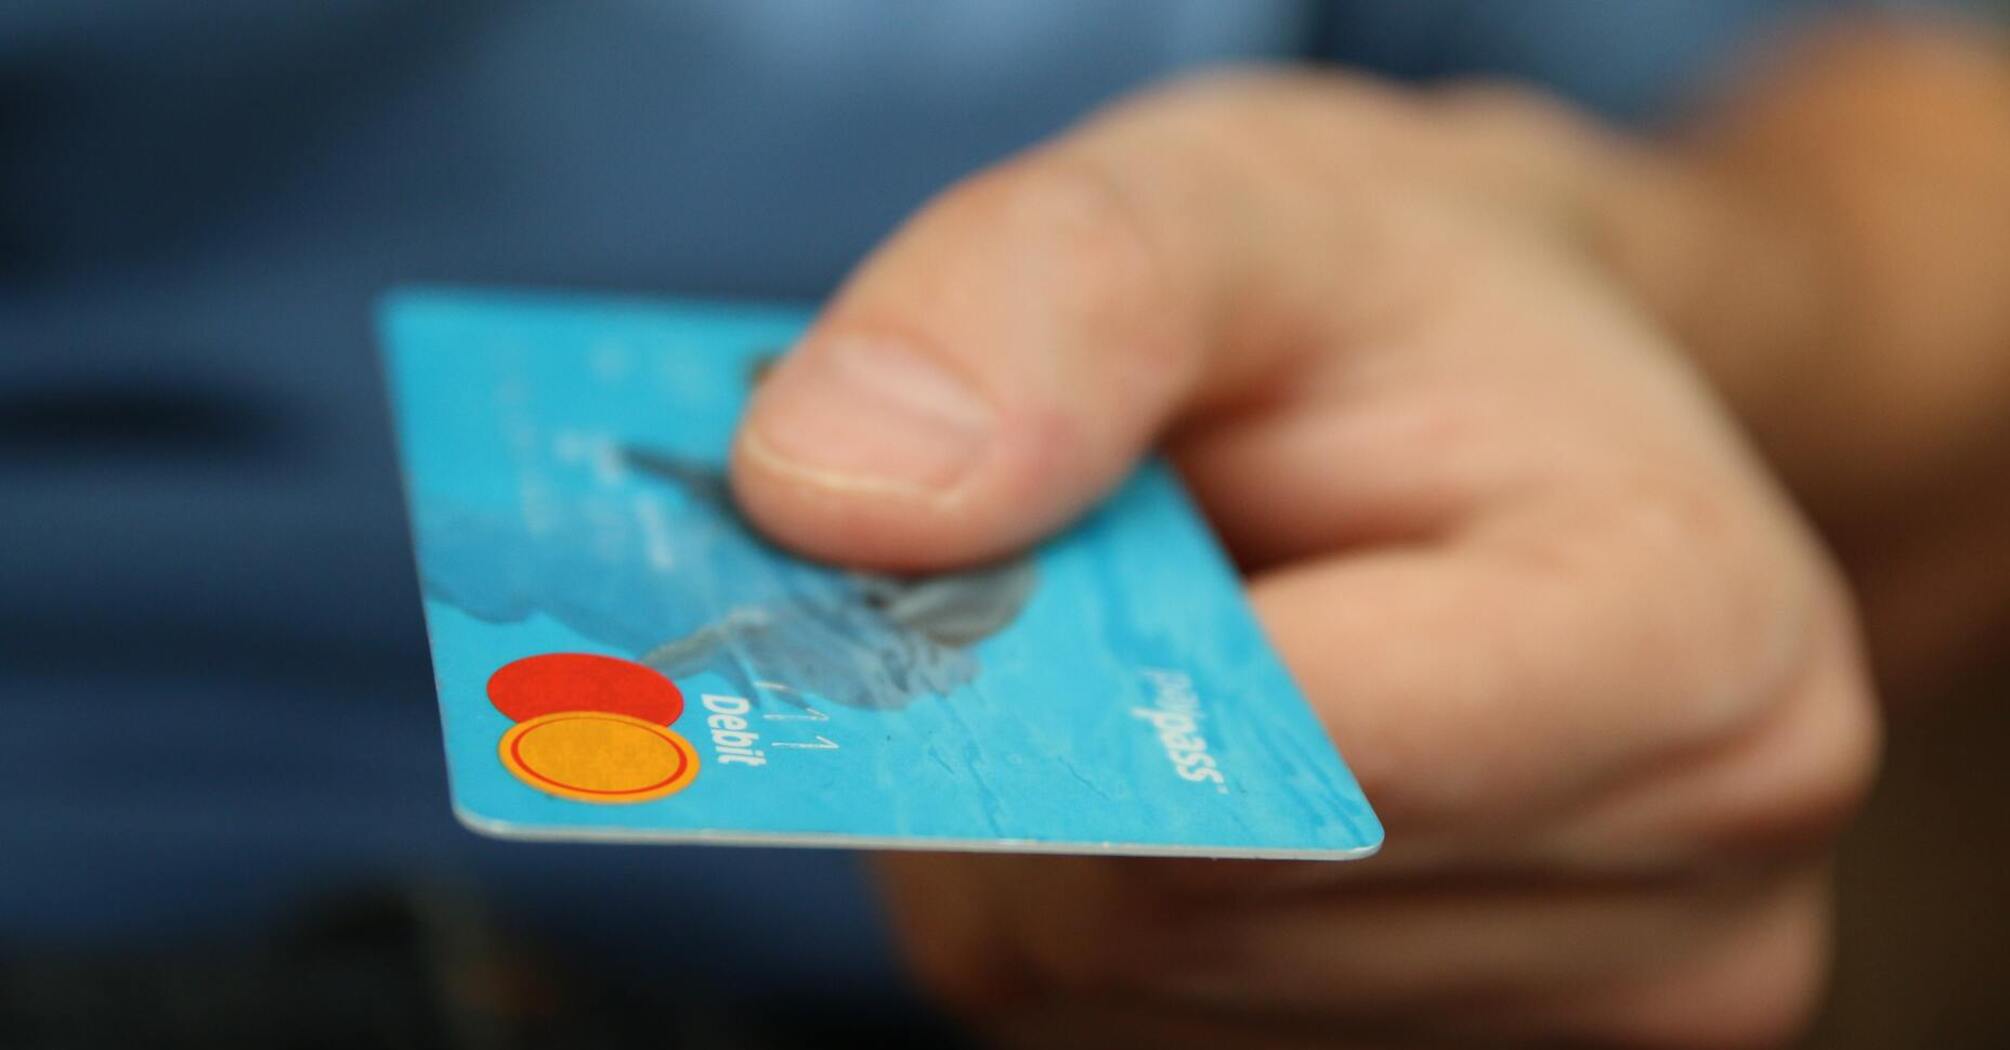 Защита платежной карты от мошенников: какую информацию запрещено разглашать